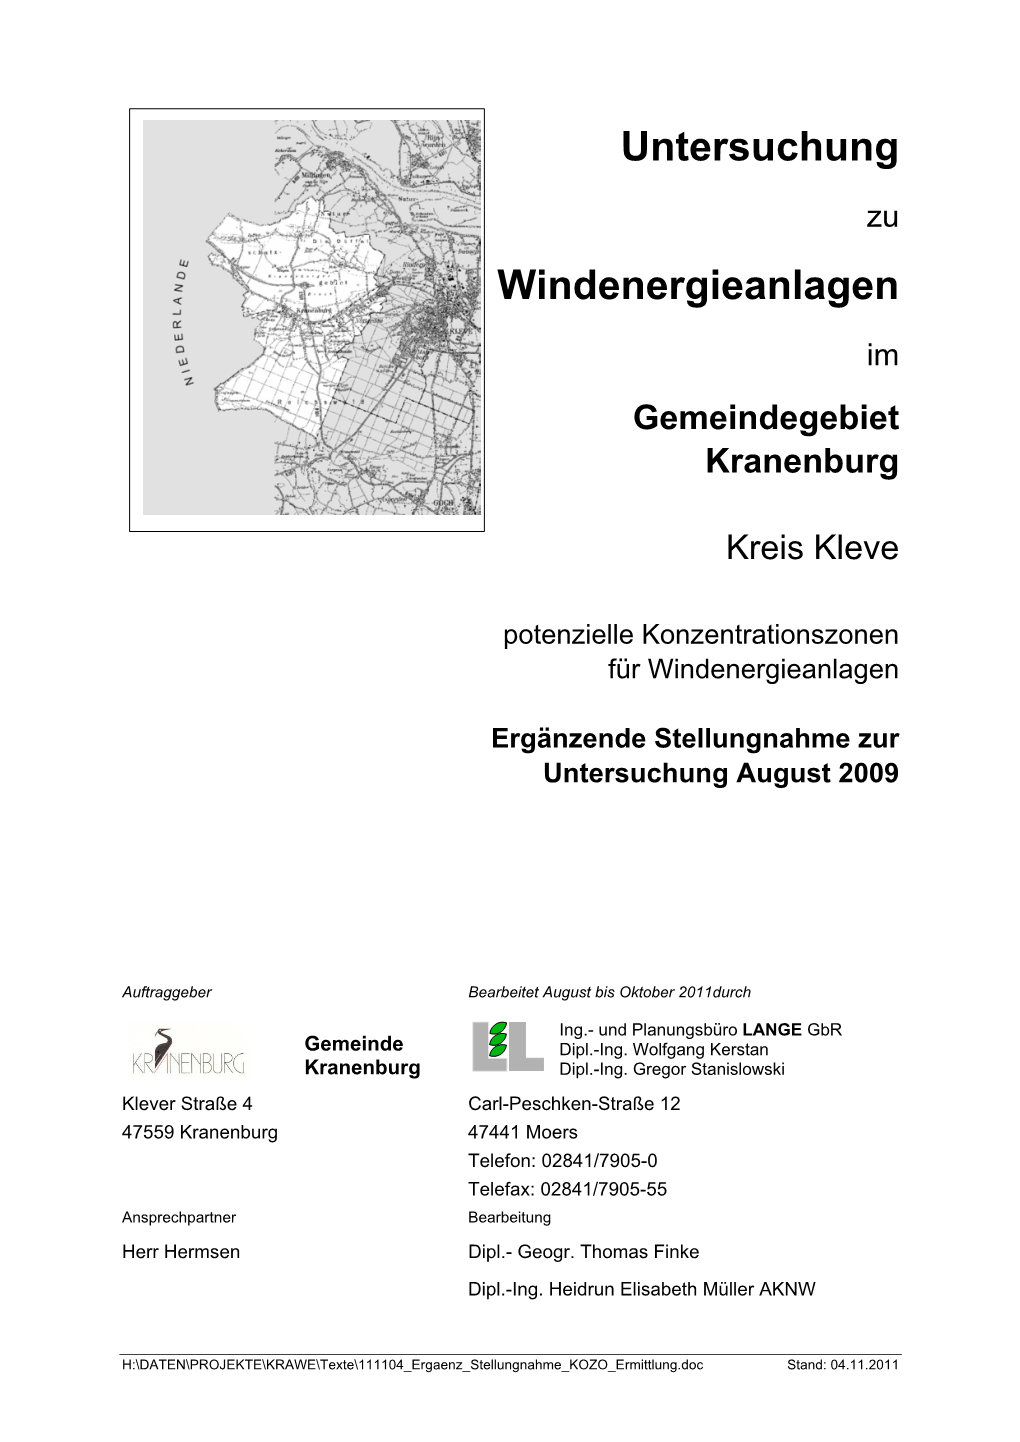 Untersuchung Windenergieanlagen